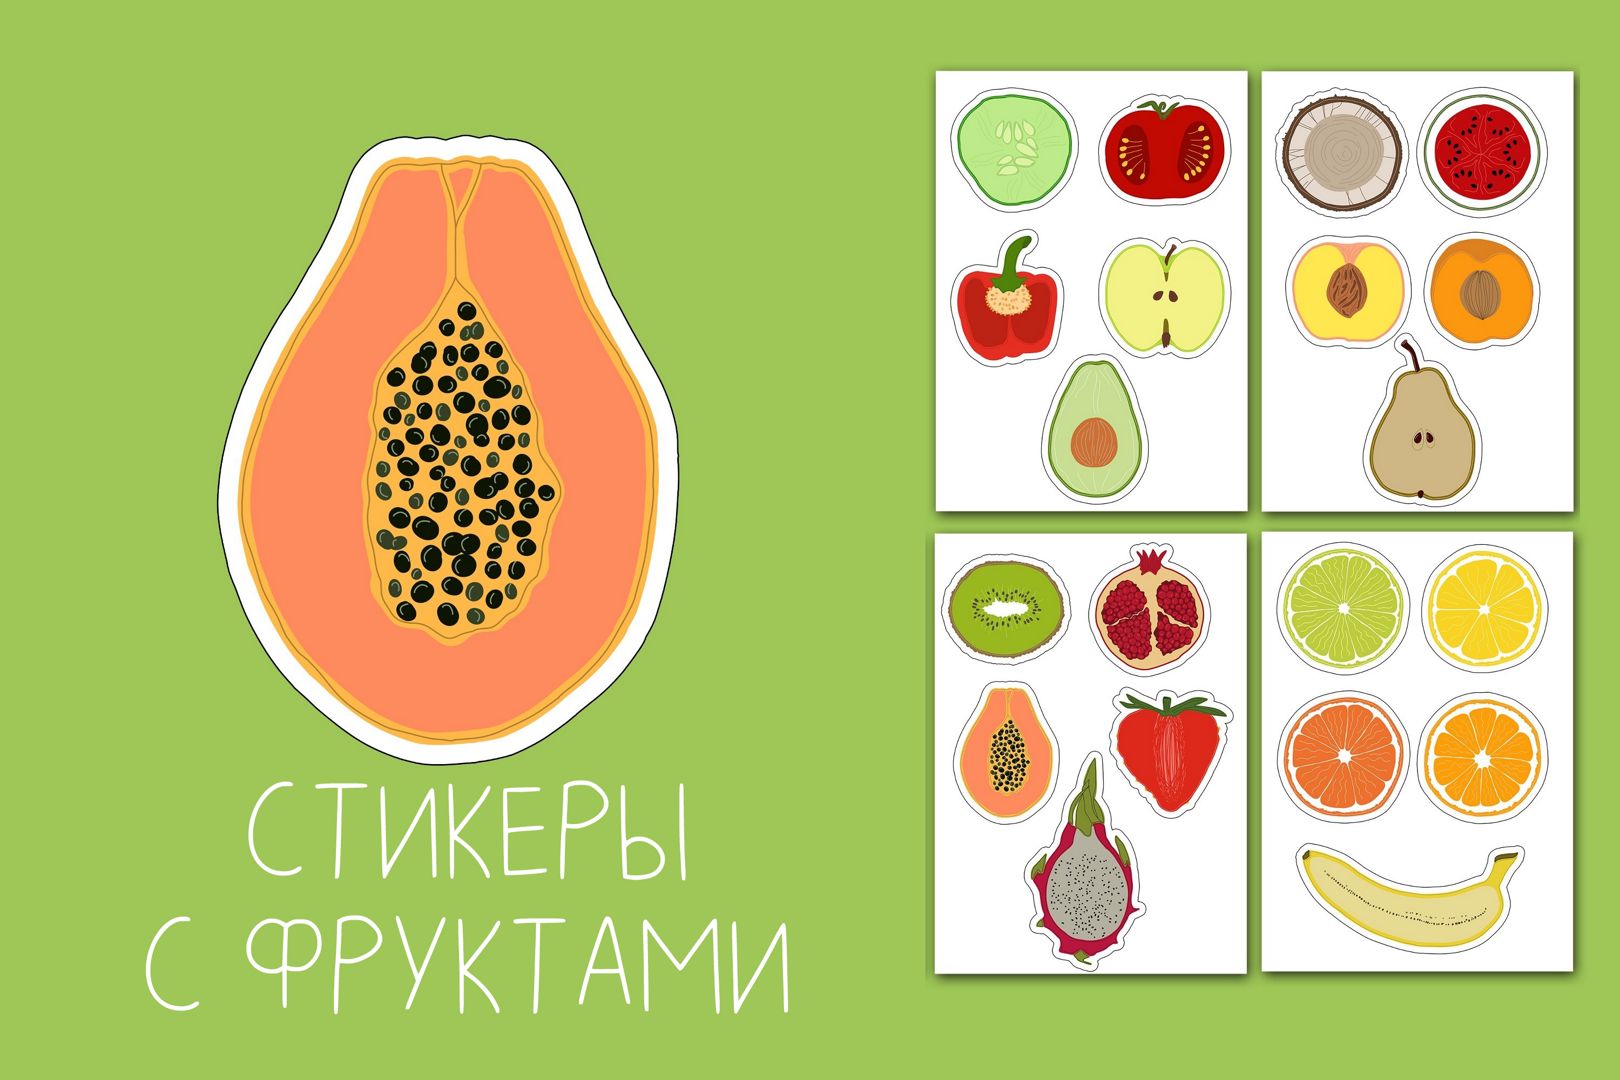 Стикеры с фруктами и овощами для печати, яркие наклейки с сочной едой